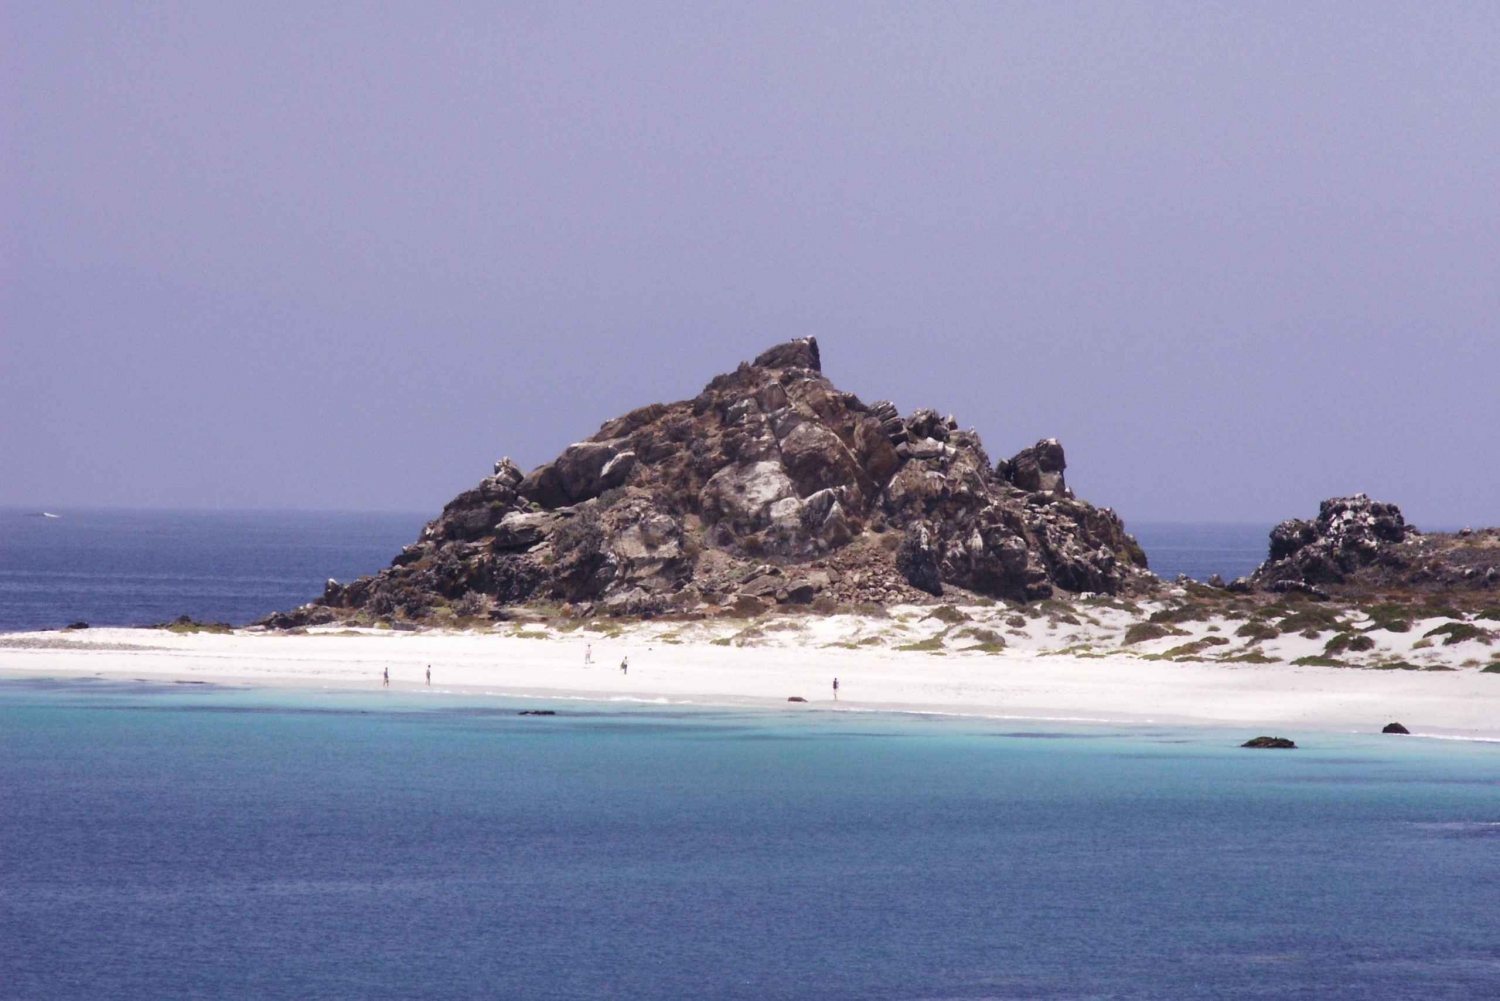 Wyspa Damas lub Chañaral: Rezerwat wielorybów i pingwinów Humboldta